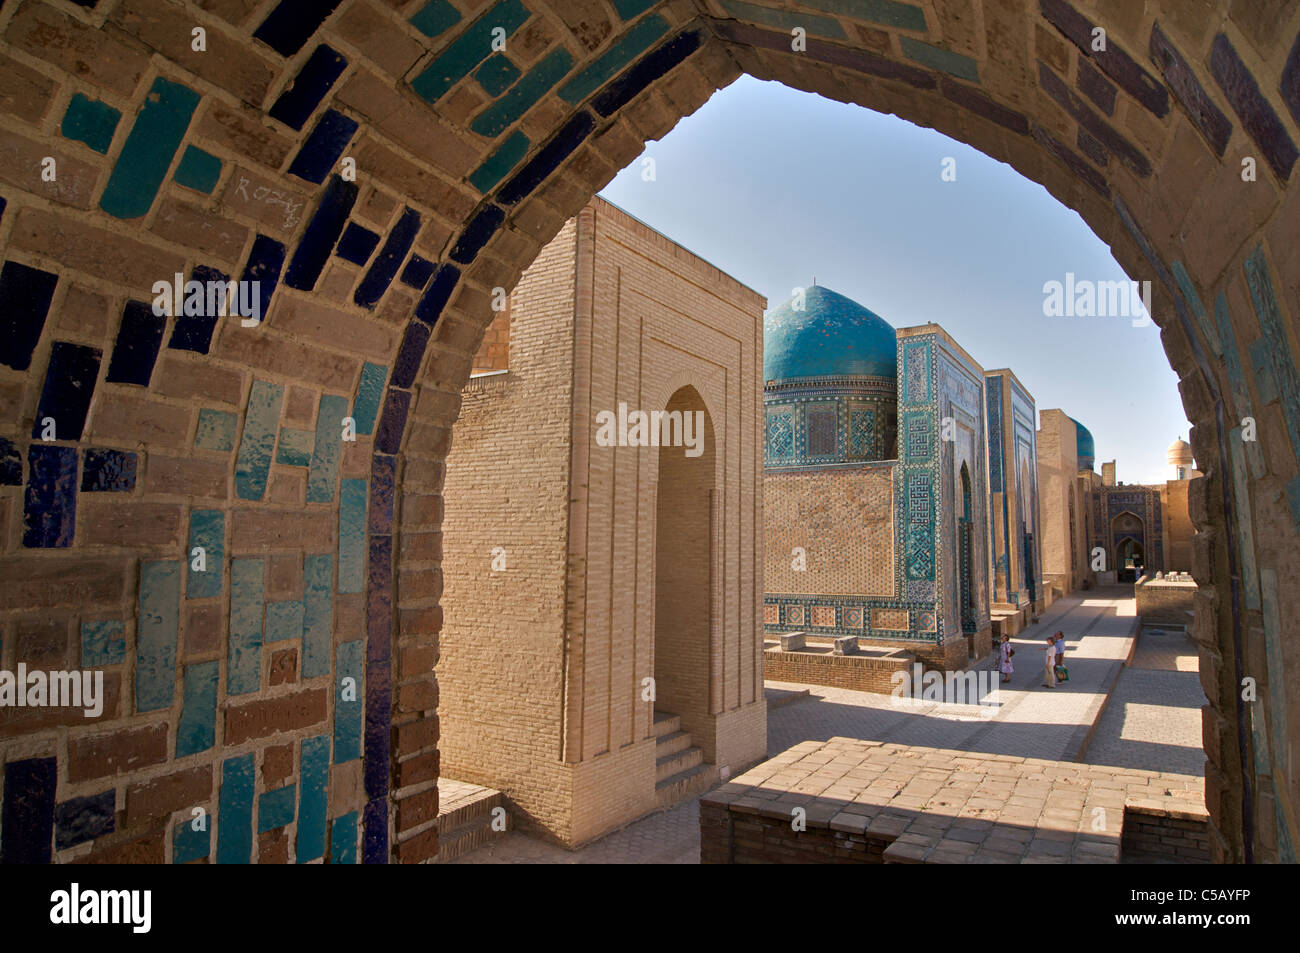 Shahr i Zindah mausoleum, Samarkand, Uzbekistan Stock Photo